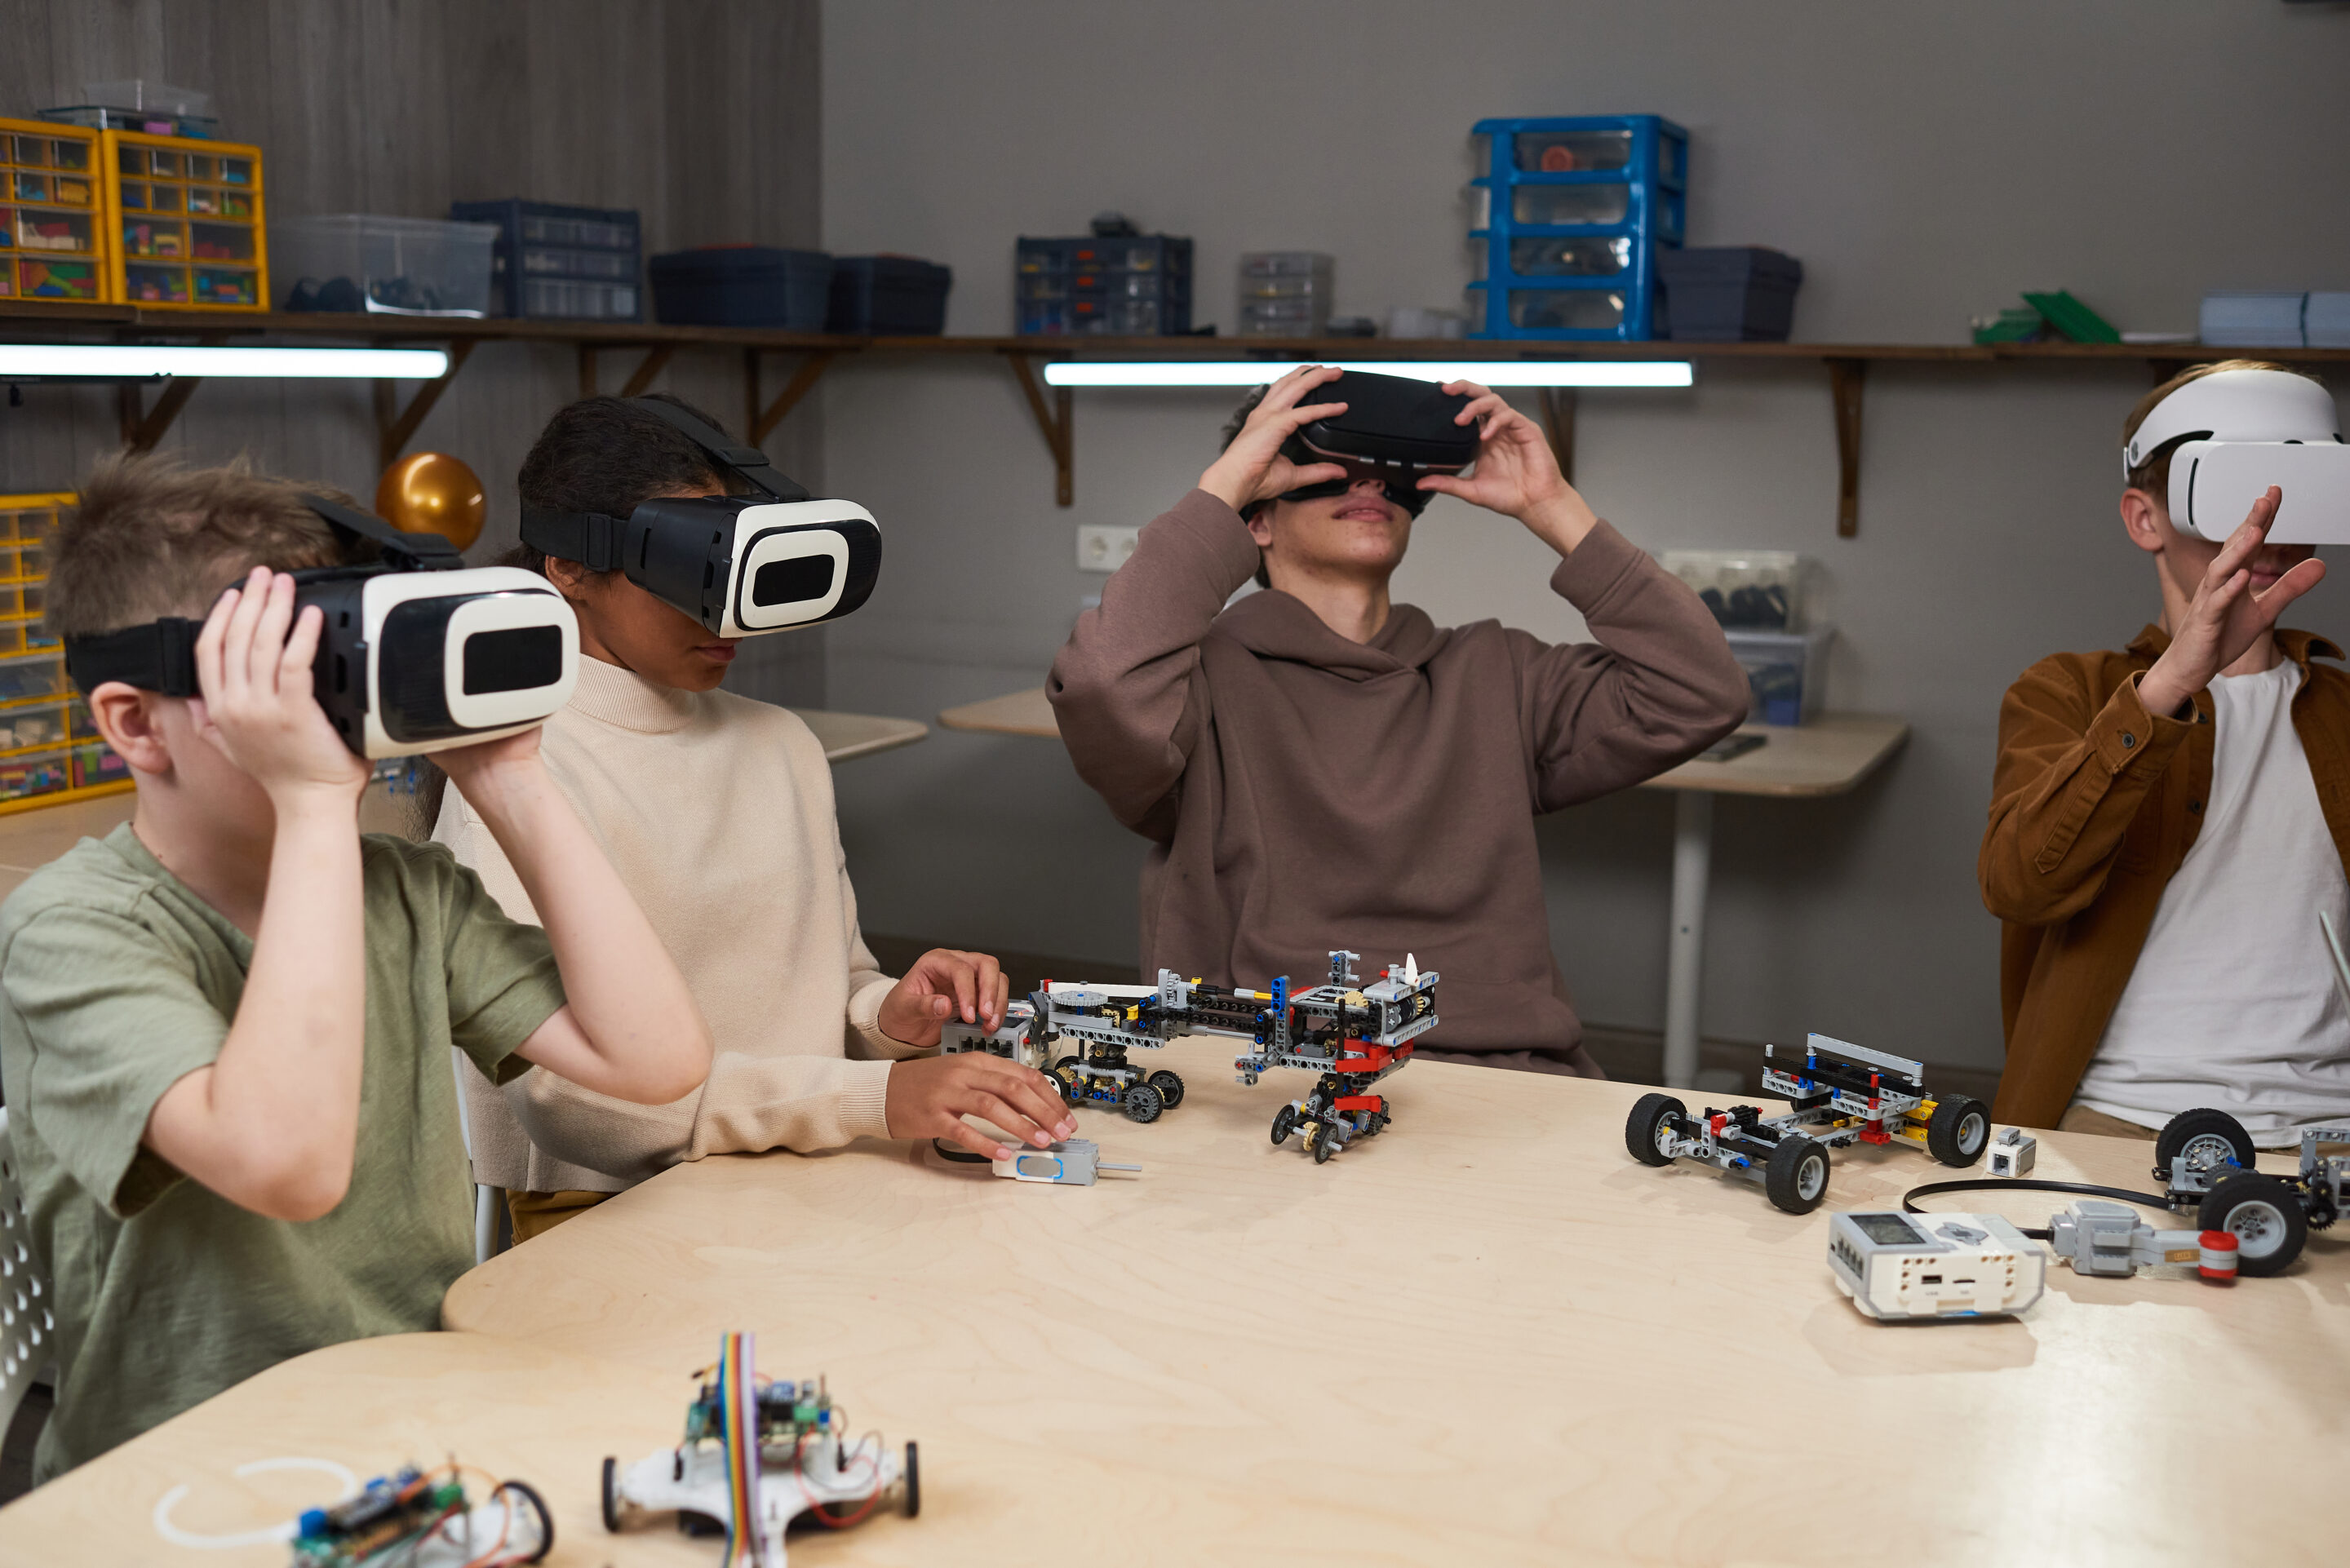 Jugendliche tragen VR-Brillen und bauen Roboter